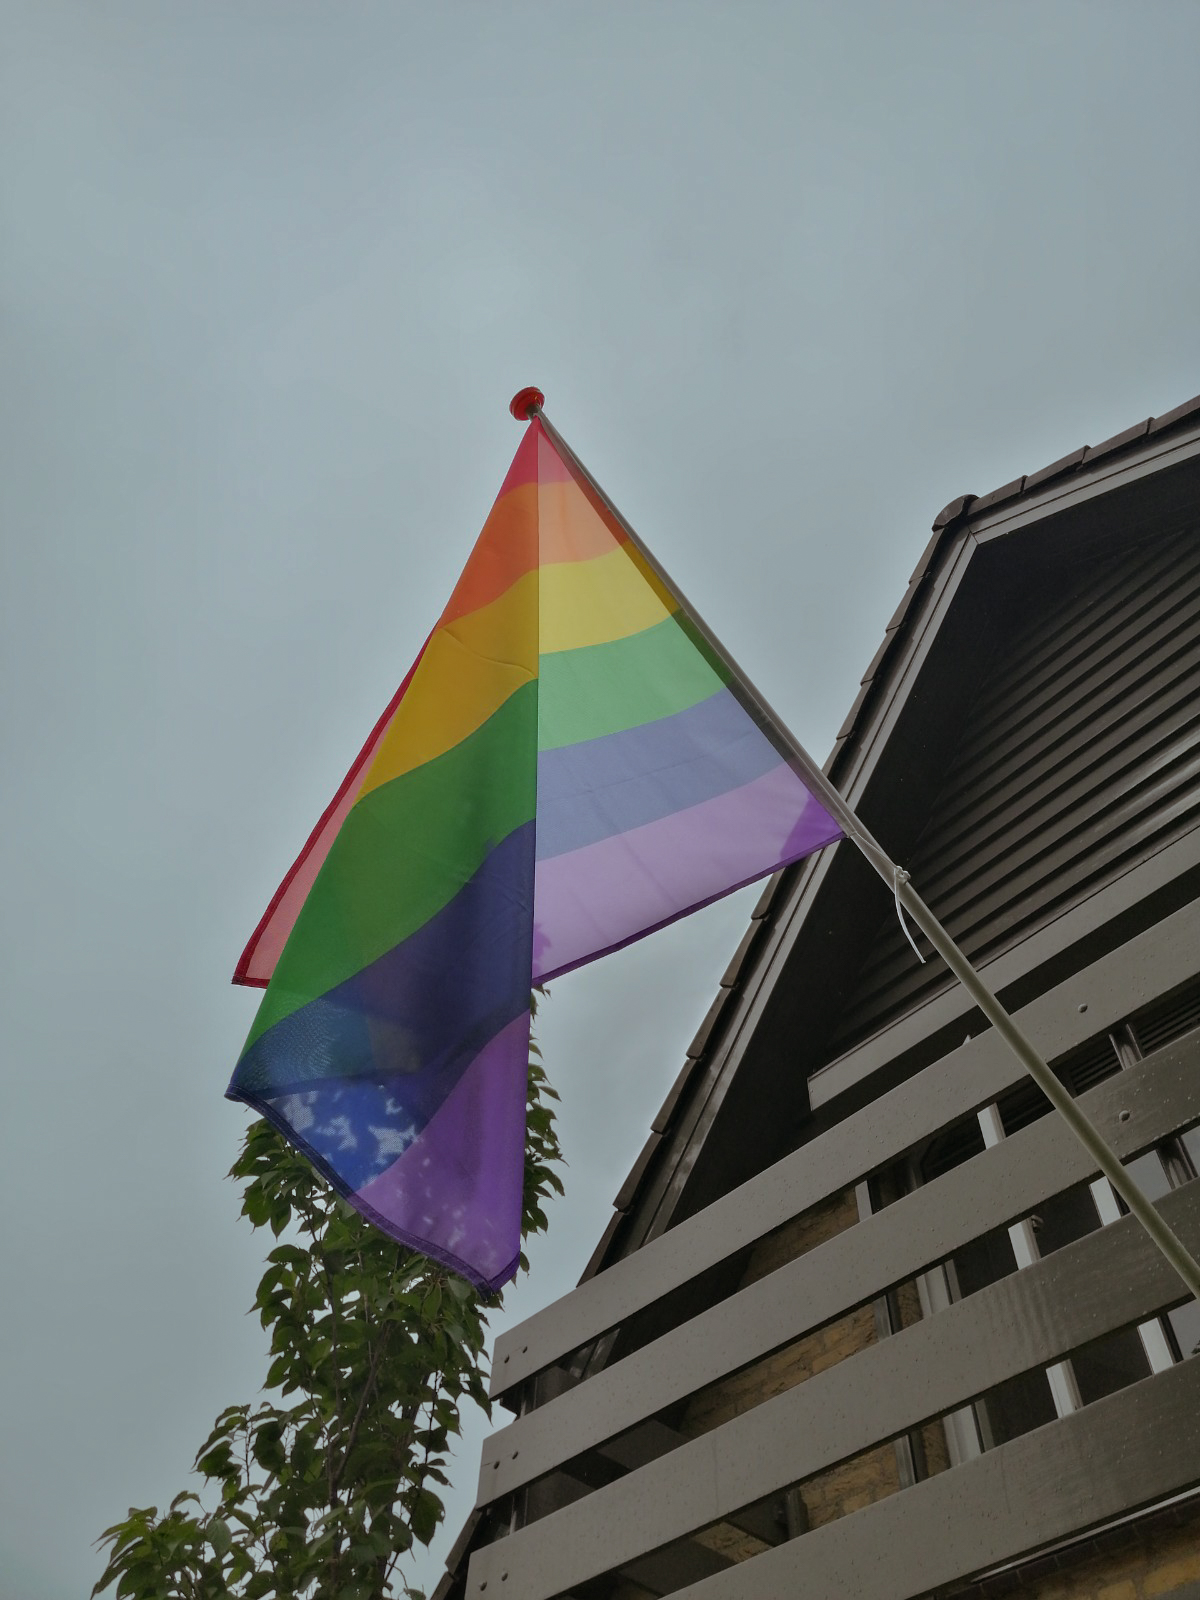 Er hangt een grote regenboogvlag aan een huis aan het balkon op een vlaggenstok. Deze is van onderen gefotografeerd.